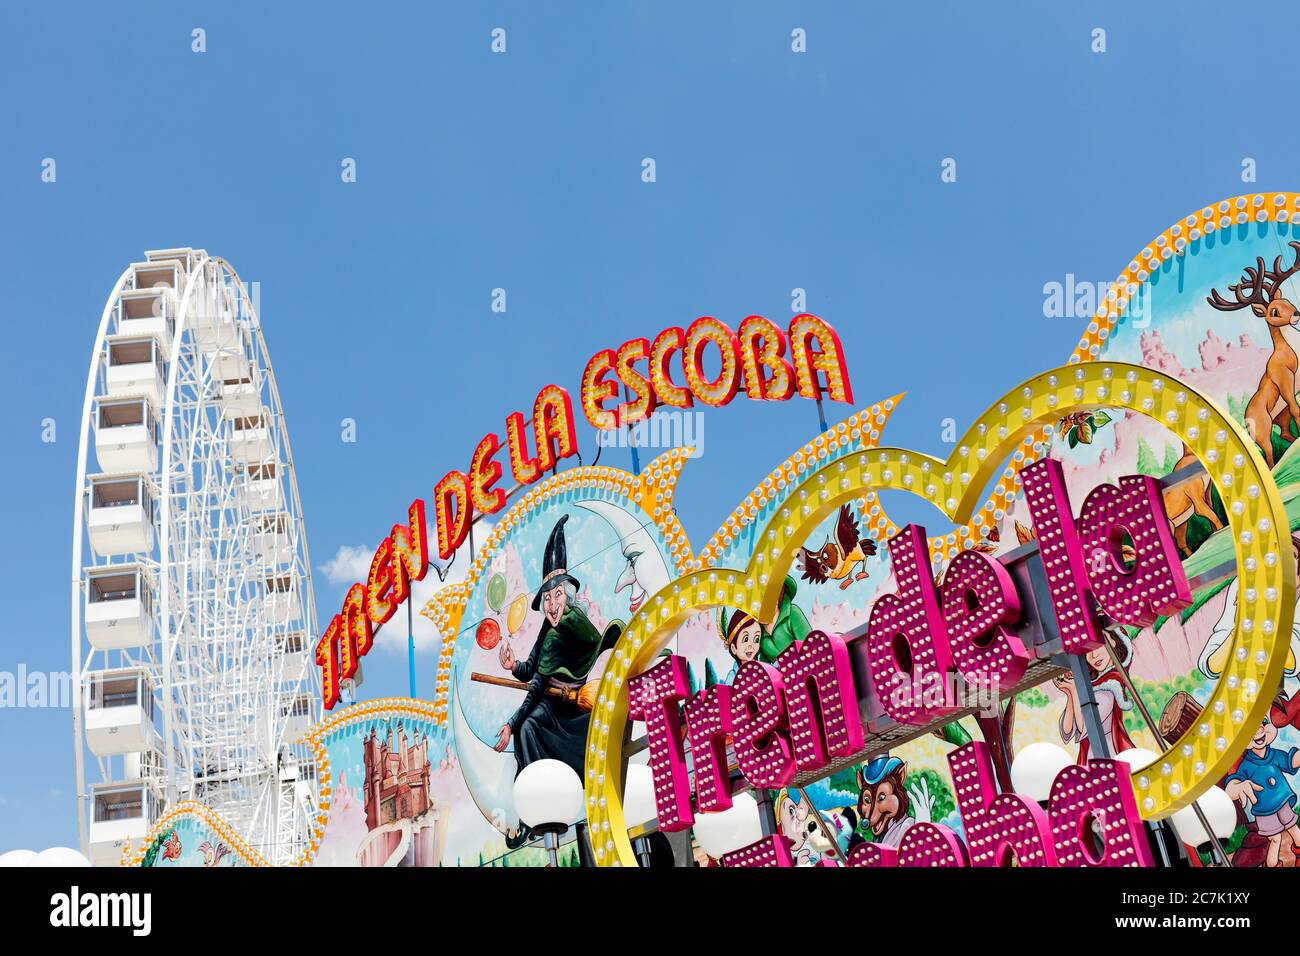 Ferris wheel, fair, carousel, sky, detail, Feria del Caballo, festival, tradition, culture, customs, Jerez de la Frontera, Andalusia, Spain, Europe Stock Photo